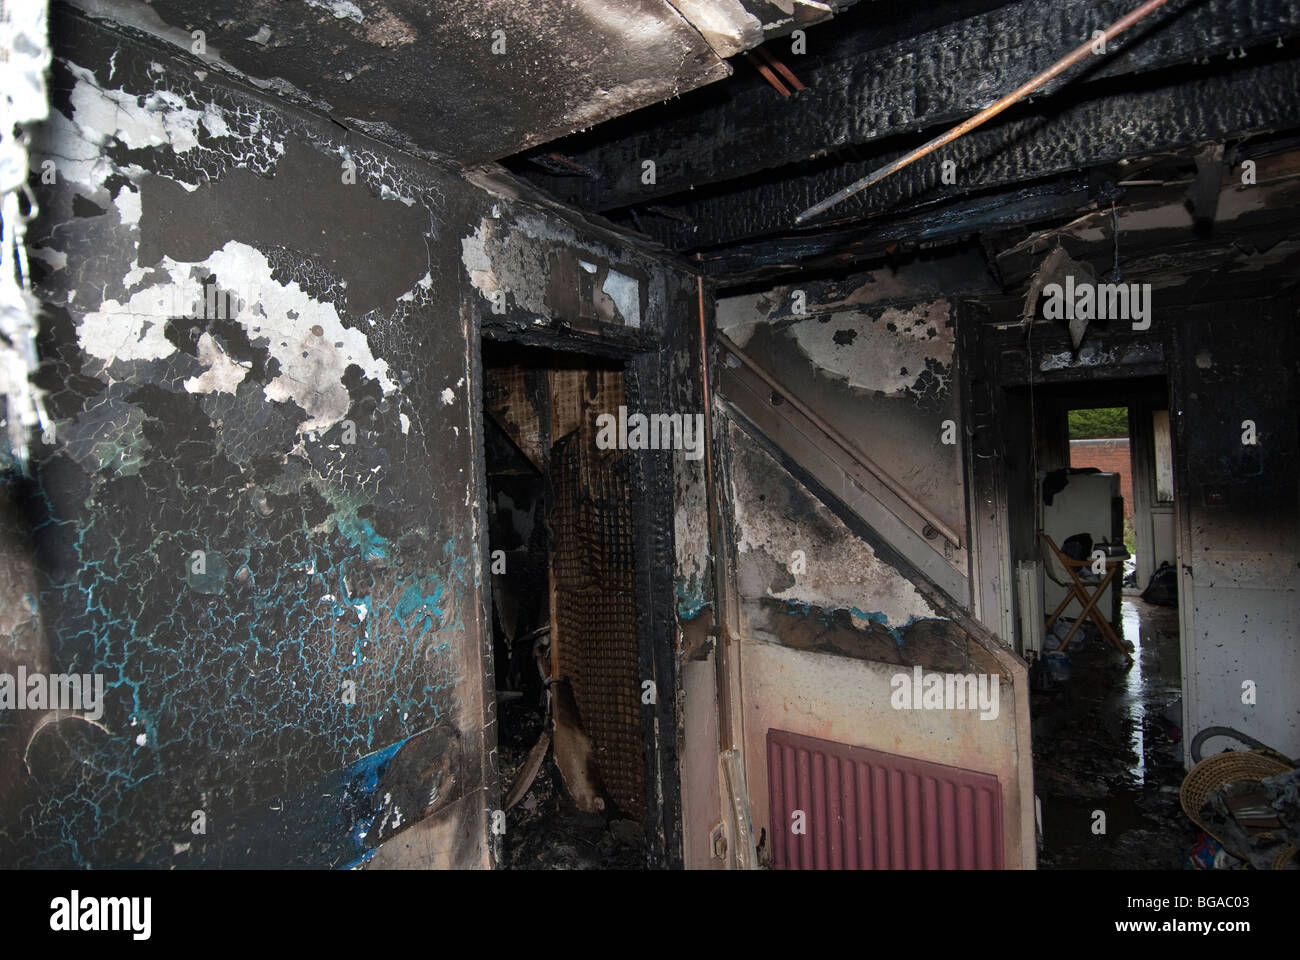 Hallenbereich des Hauses nach schweren Brand im Lounge ausgebrannt Stockfoto